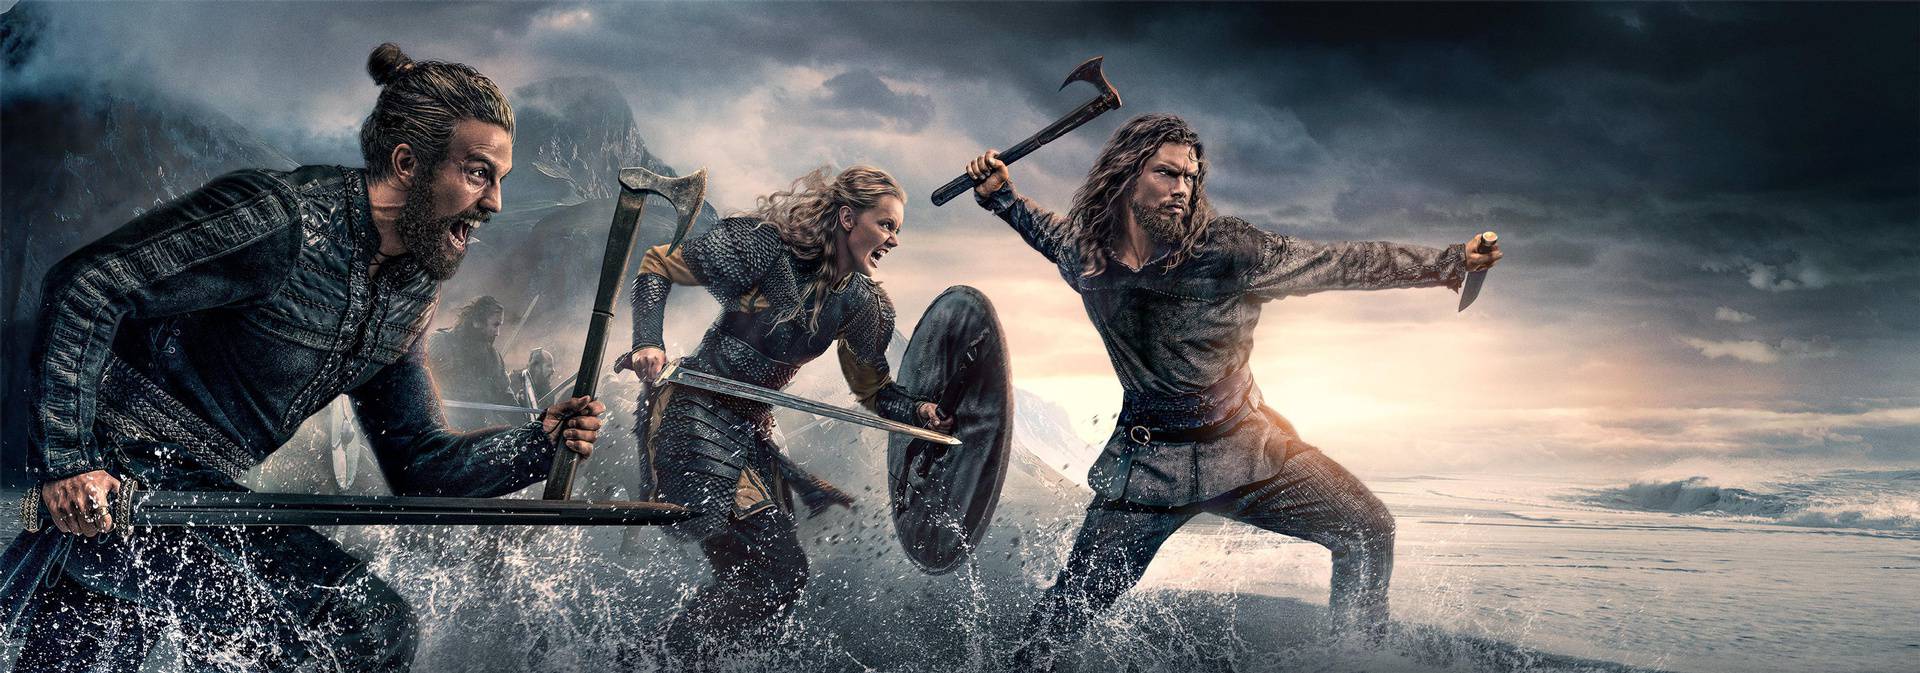 Film "Vikings: Valhalla" (2022)